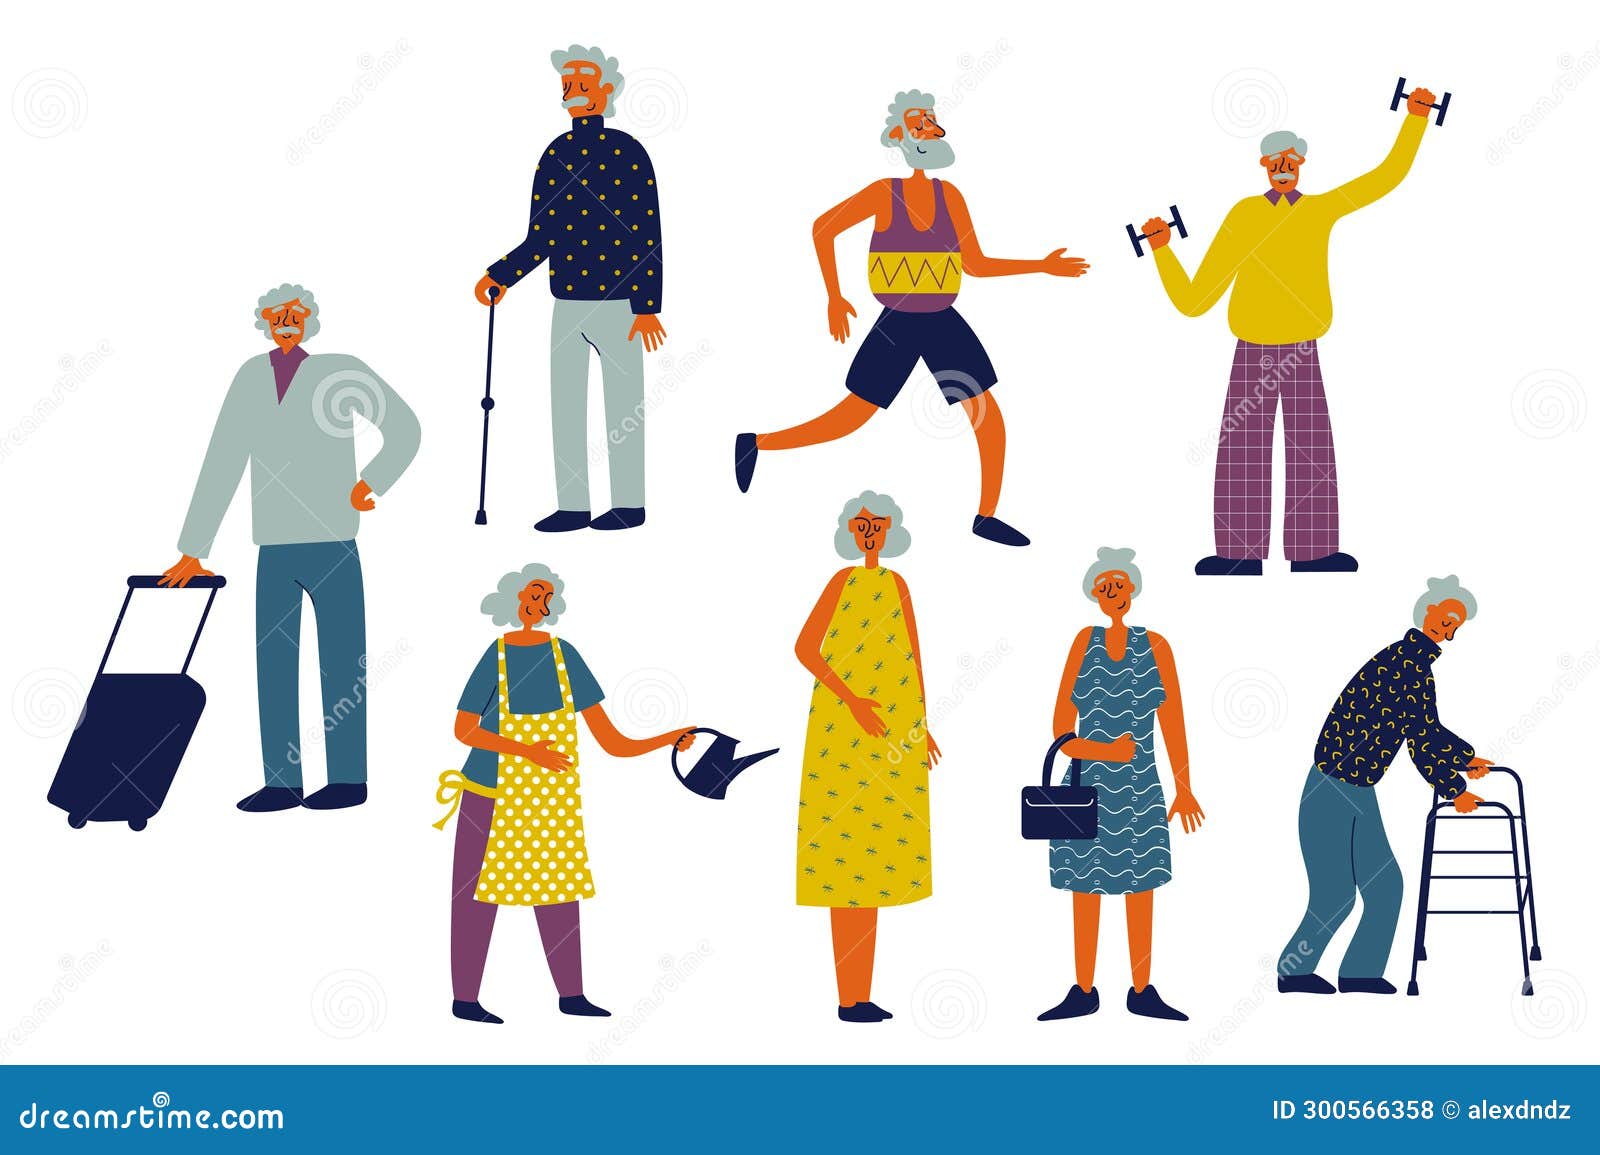 Elderly Exercise Stock Illustrations – 6,613 Elderly Exercise Stock  Illustrations, Vectors & Clipart - Dreamstime